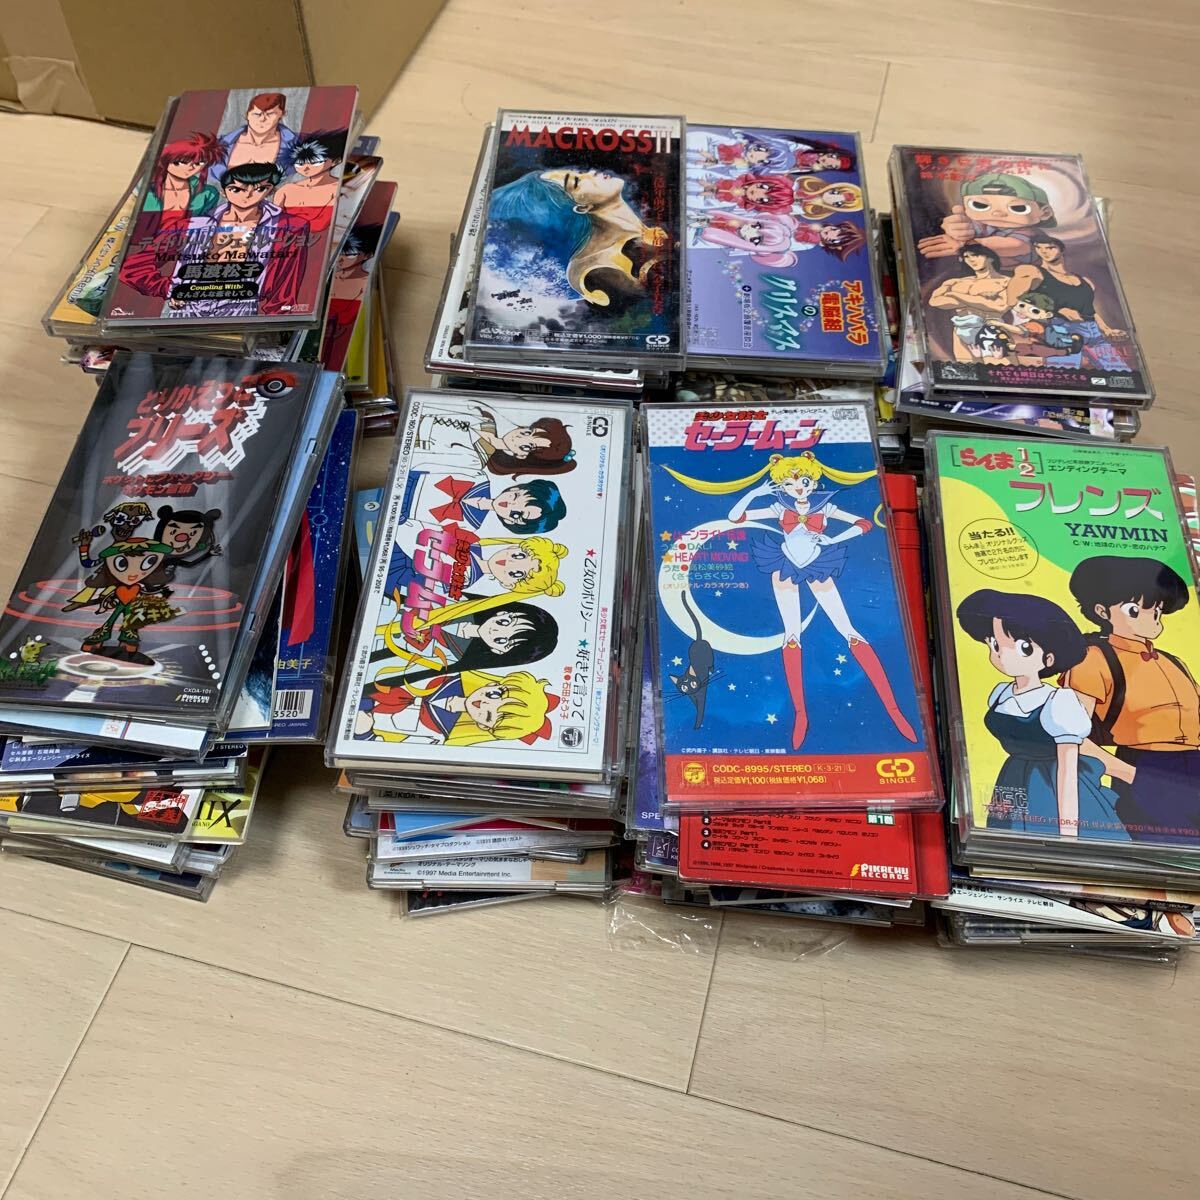 8cm аниме серия CD много комплект суммировать голос актера Ranma 1/2 Yu Yu Hakusho Японская музыка Pokemon Gundam GaoGaiGar Sailor Moon подлинная вещь 40 8cmcd